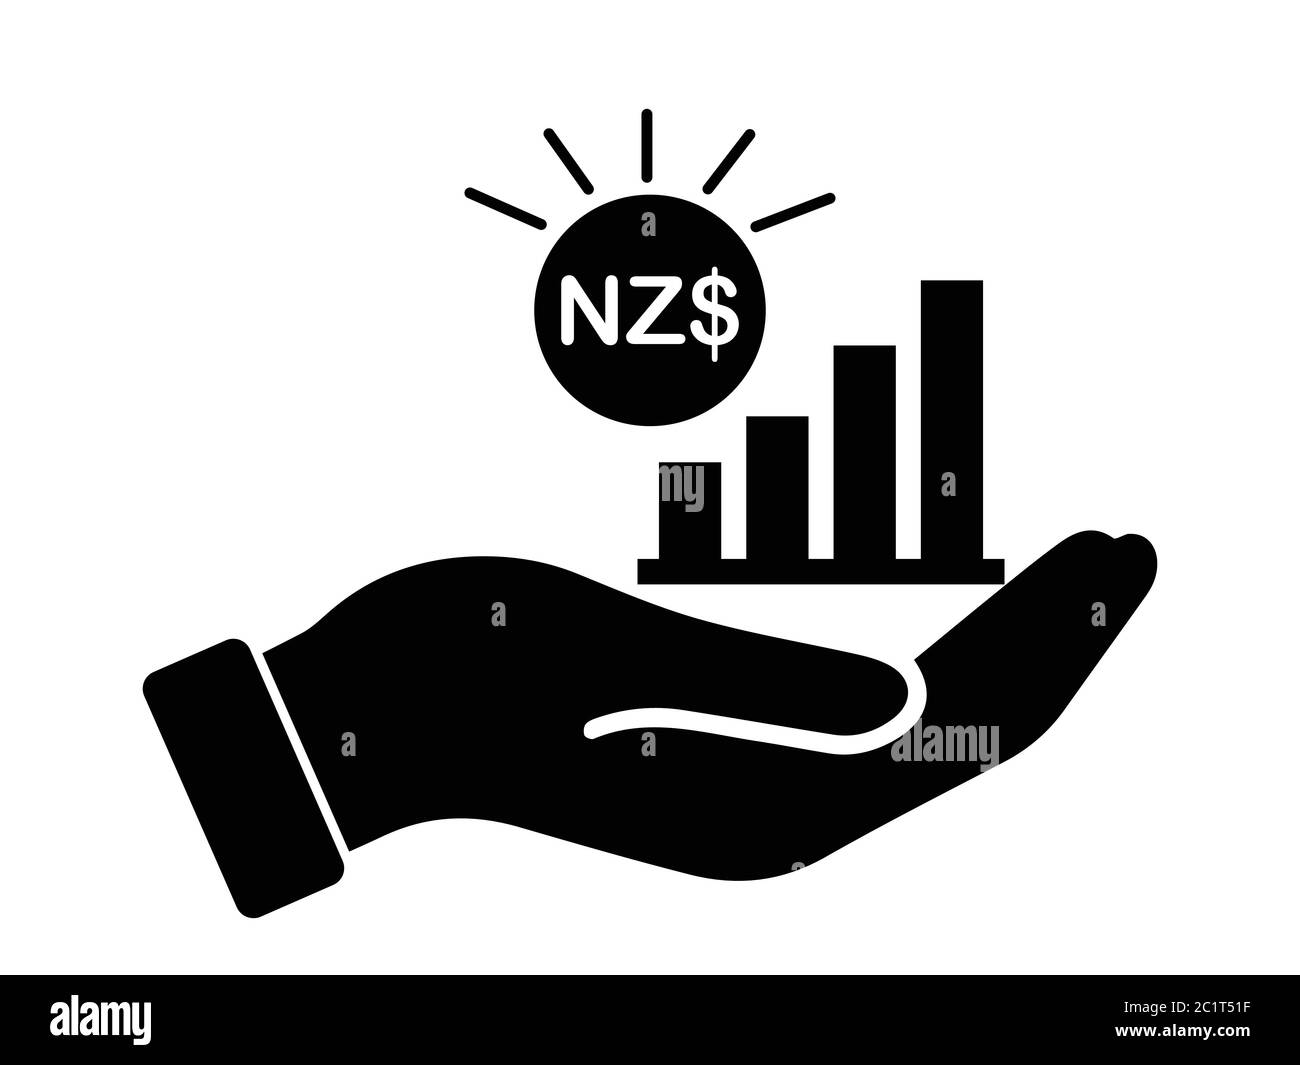 Distribuez le chat NZD New Zealand Dollar Growth Bar. Illustration noire isolée sur un fond blanc. Vecteur EPS Illustration de Vecteur